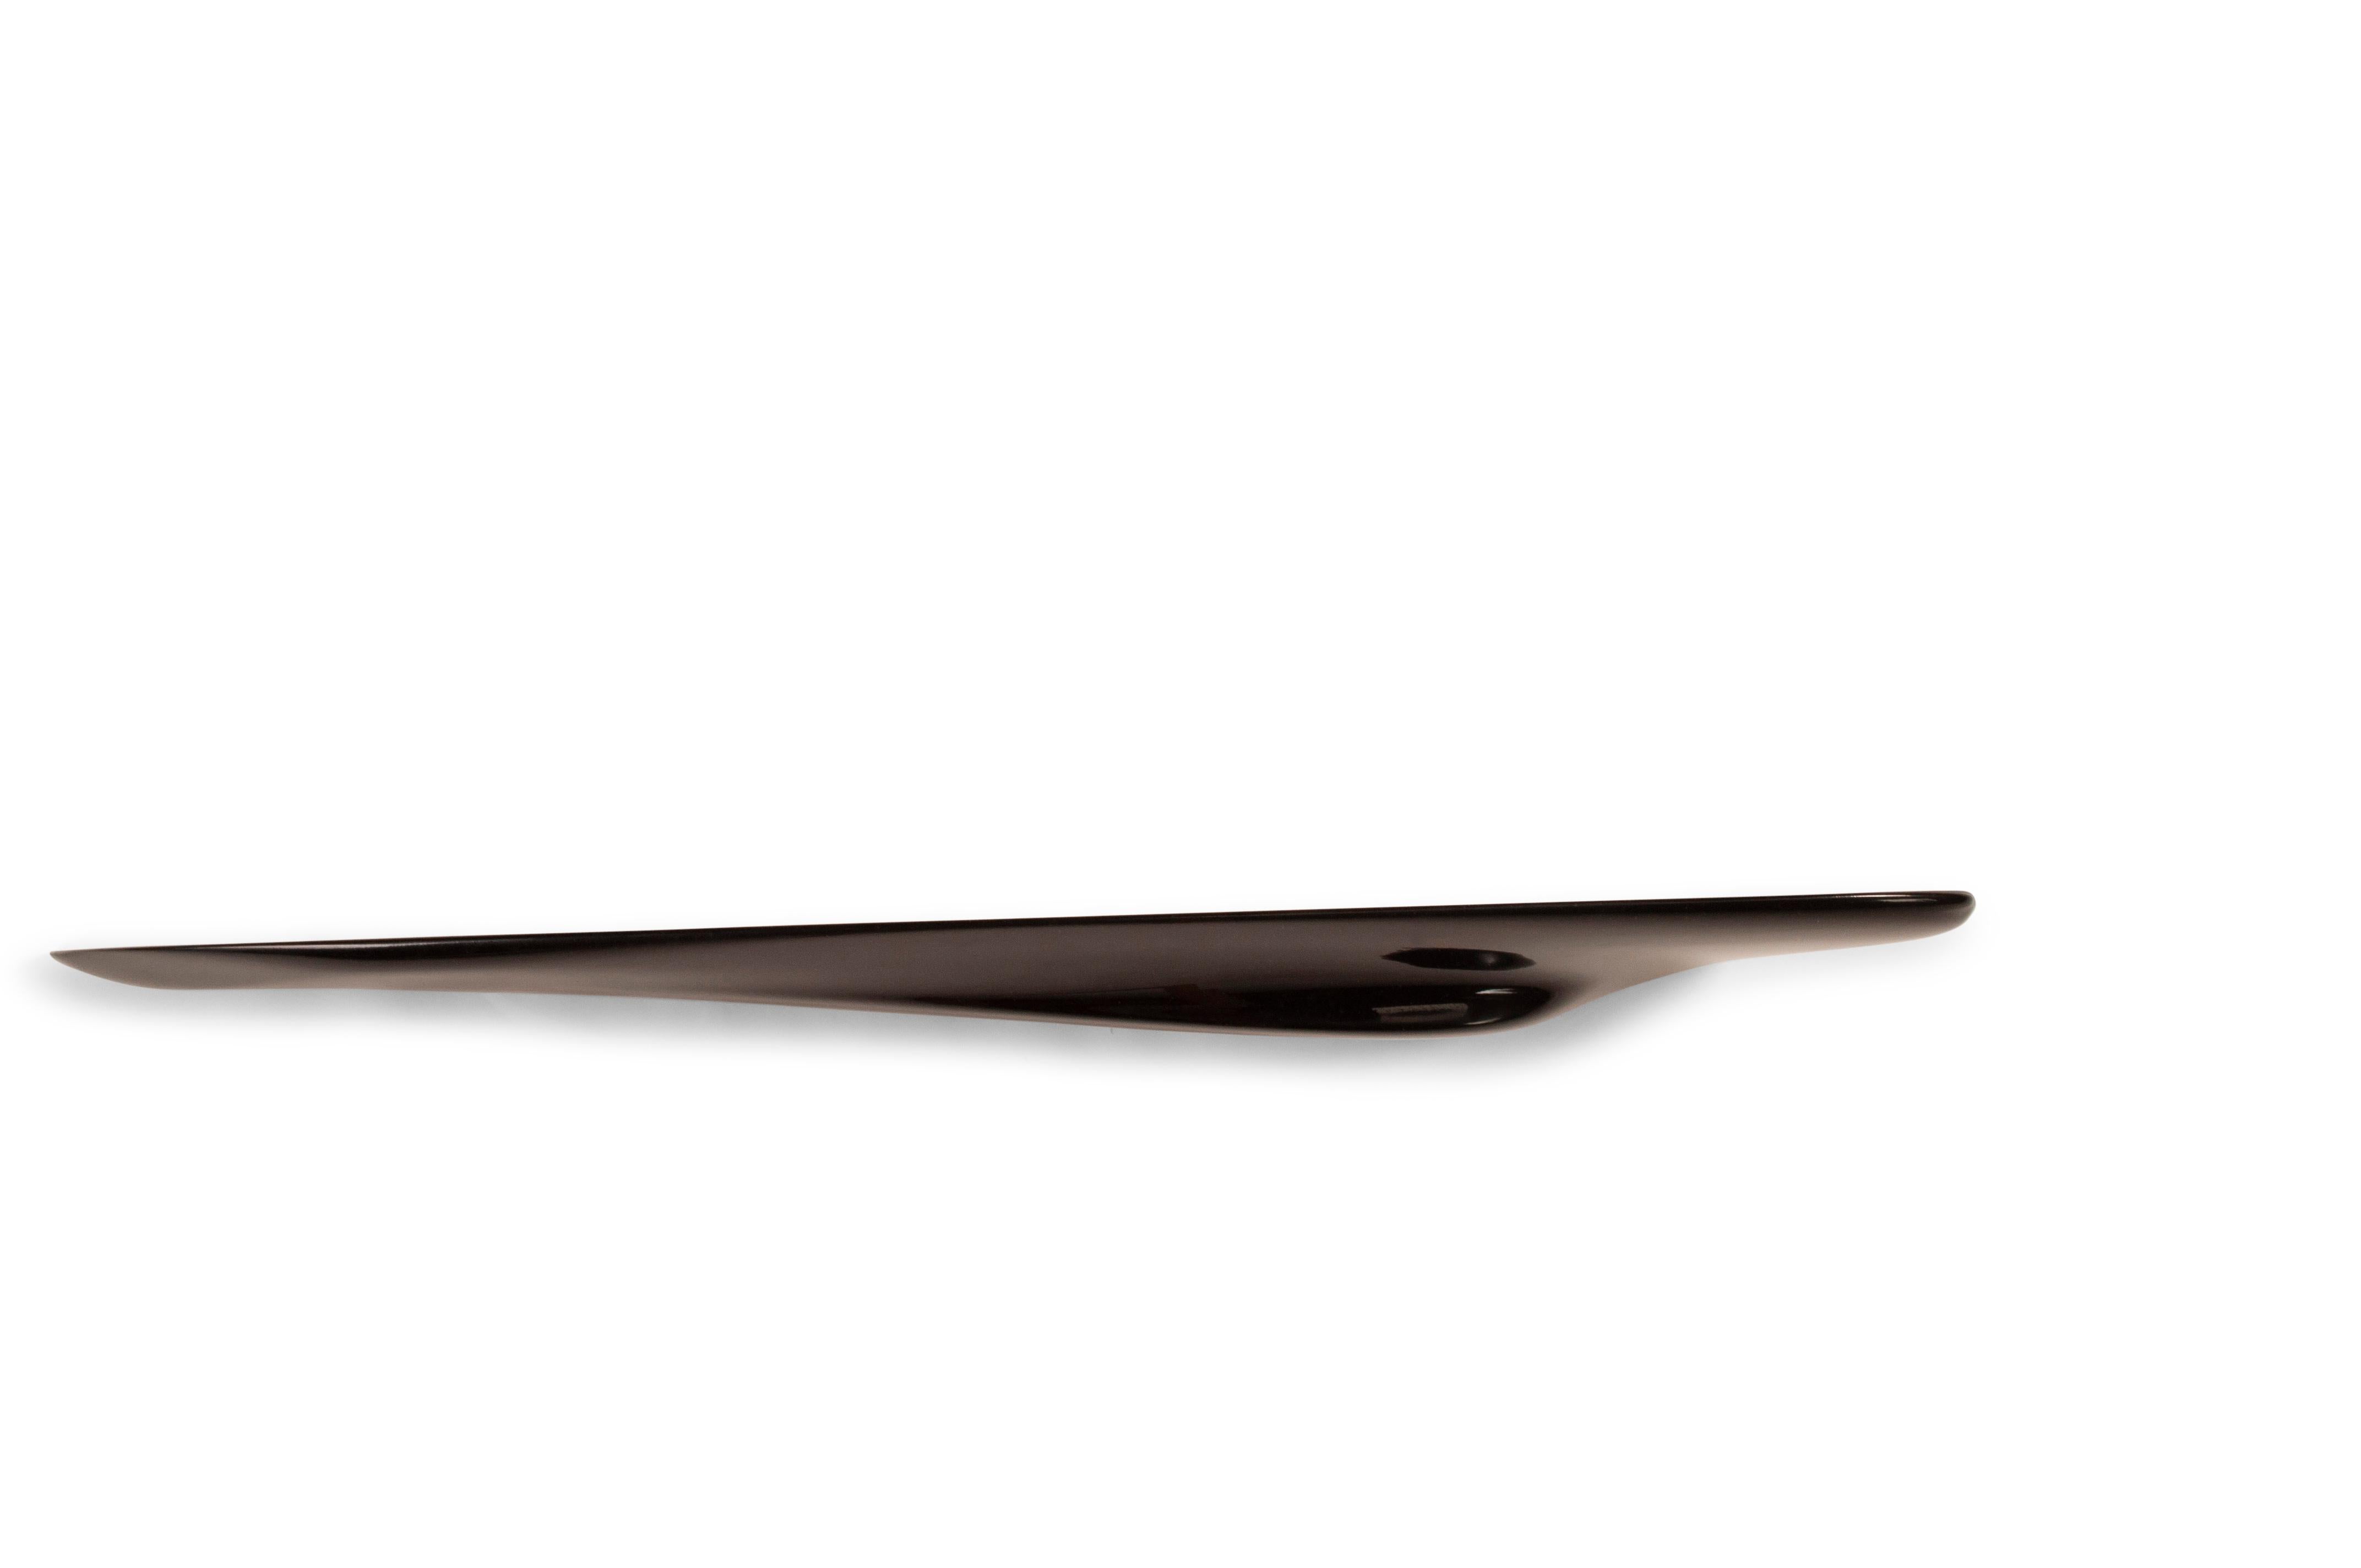 Amorph Riva Regal, schwarz lackiert, Wandmontage. Das Regal wird mit verdeckter Halterung geliefert. Erhältlich in verschiedenen Abmessungen und Sondergrößen. 

Über Amorph: 
Amorph ist ein Design- und Produktionsunternehmen mit Sitz in Los Angeles,